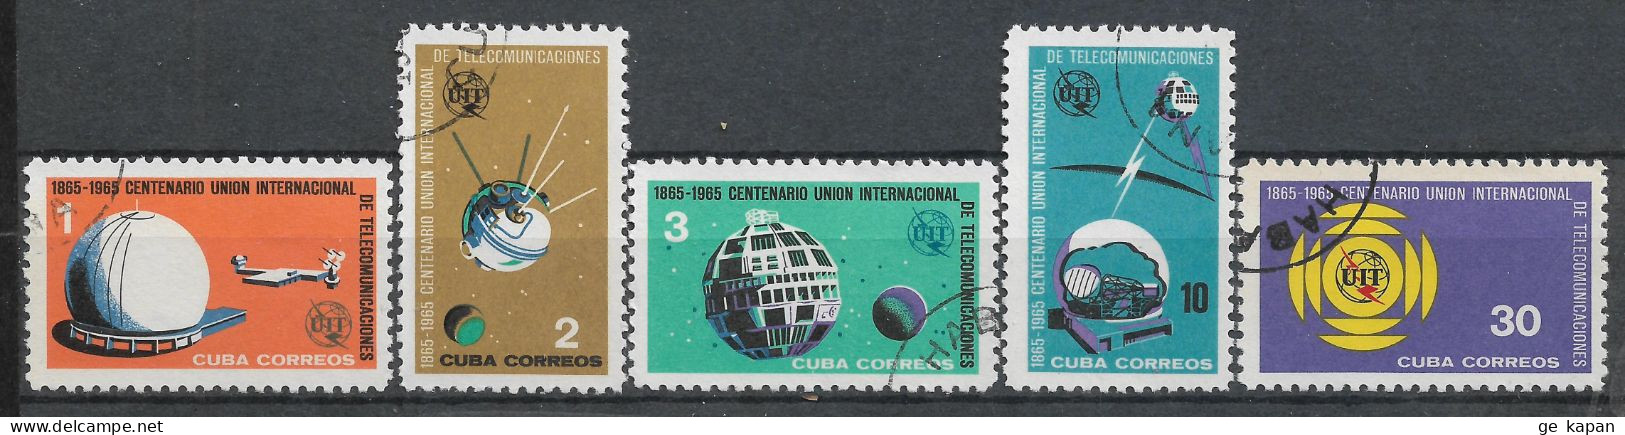 1965 CUBA COMPLETE SET OF 5 USED STAMPS (Michel # 1026-1030) CV €2.30 - Gebruikt